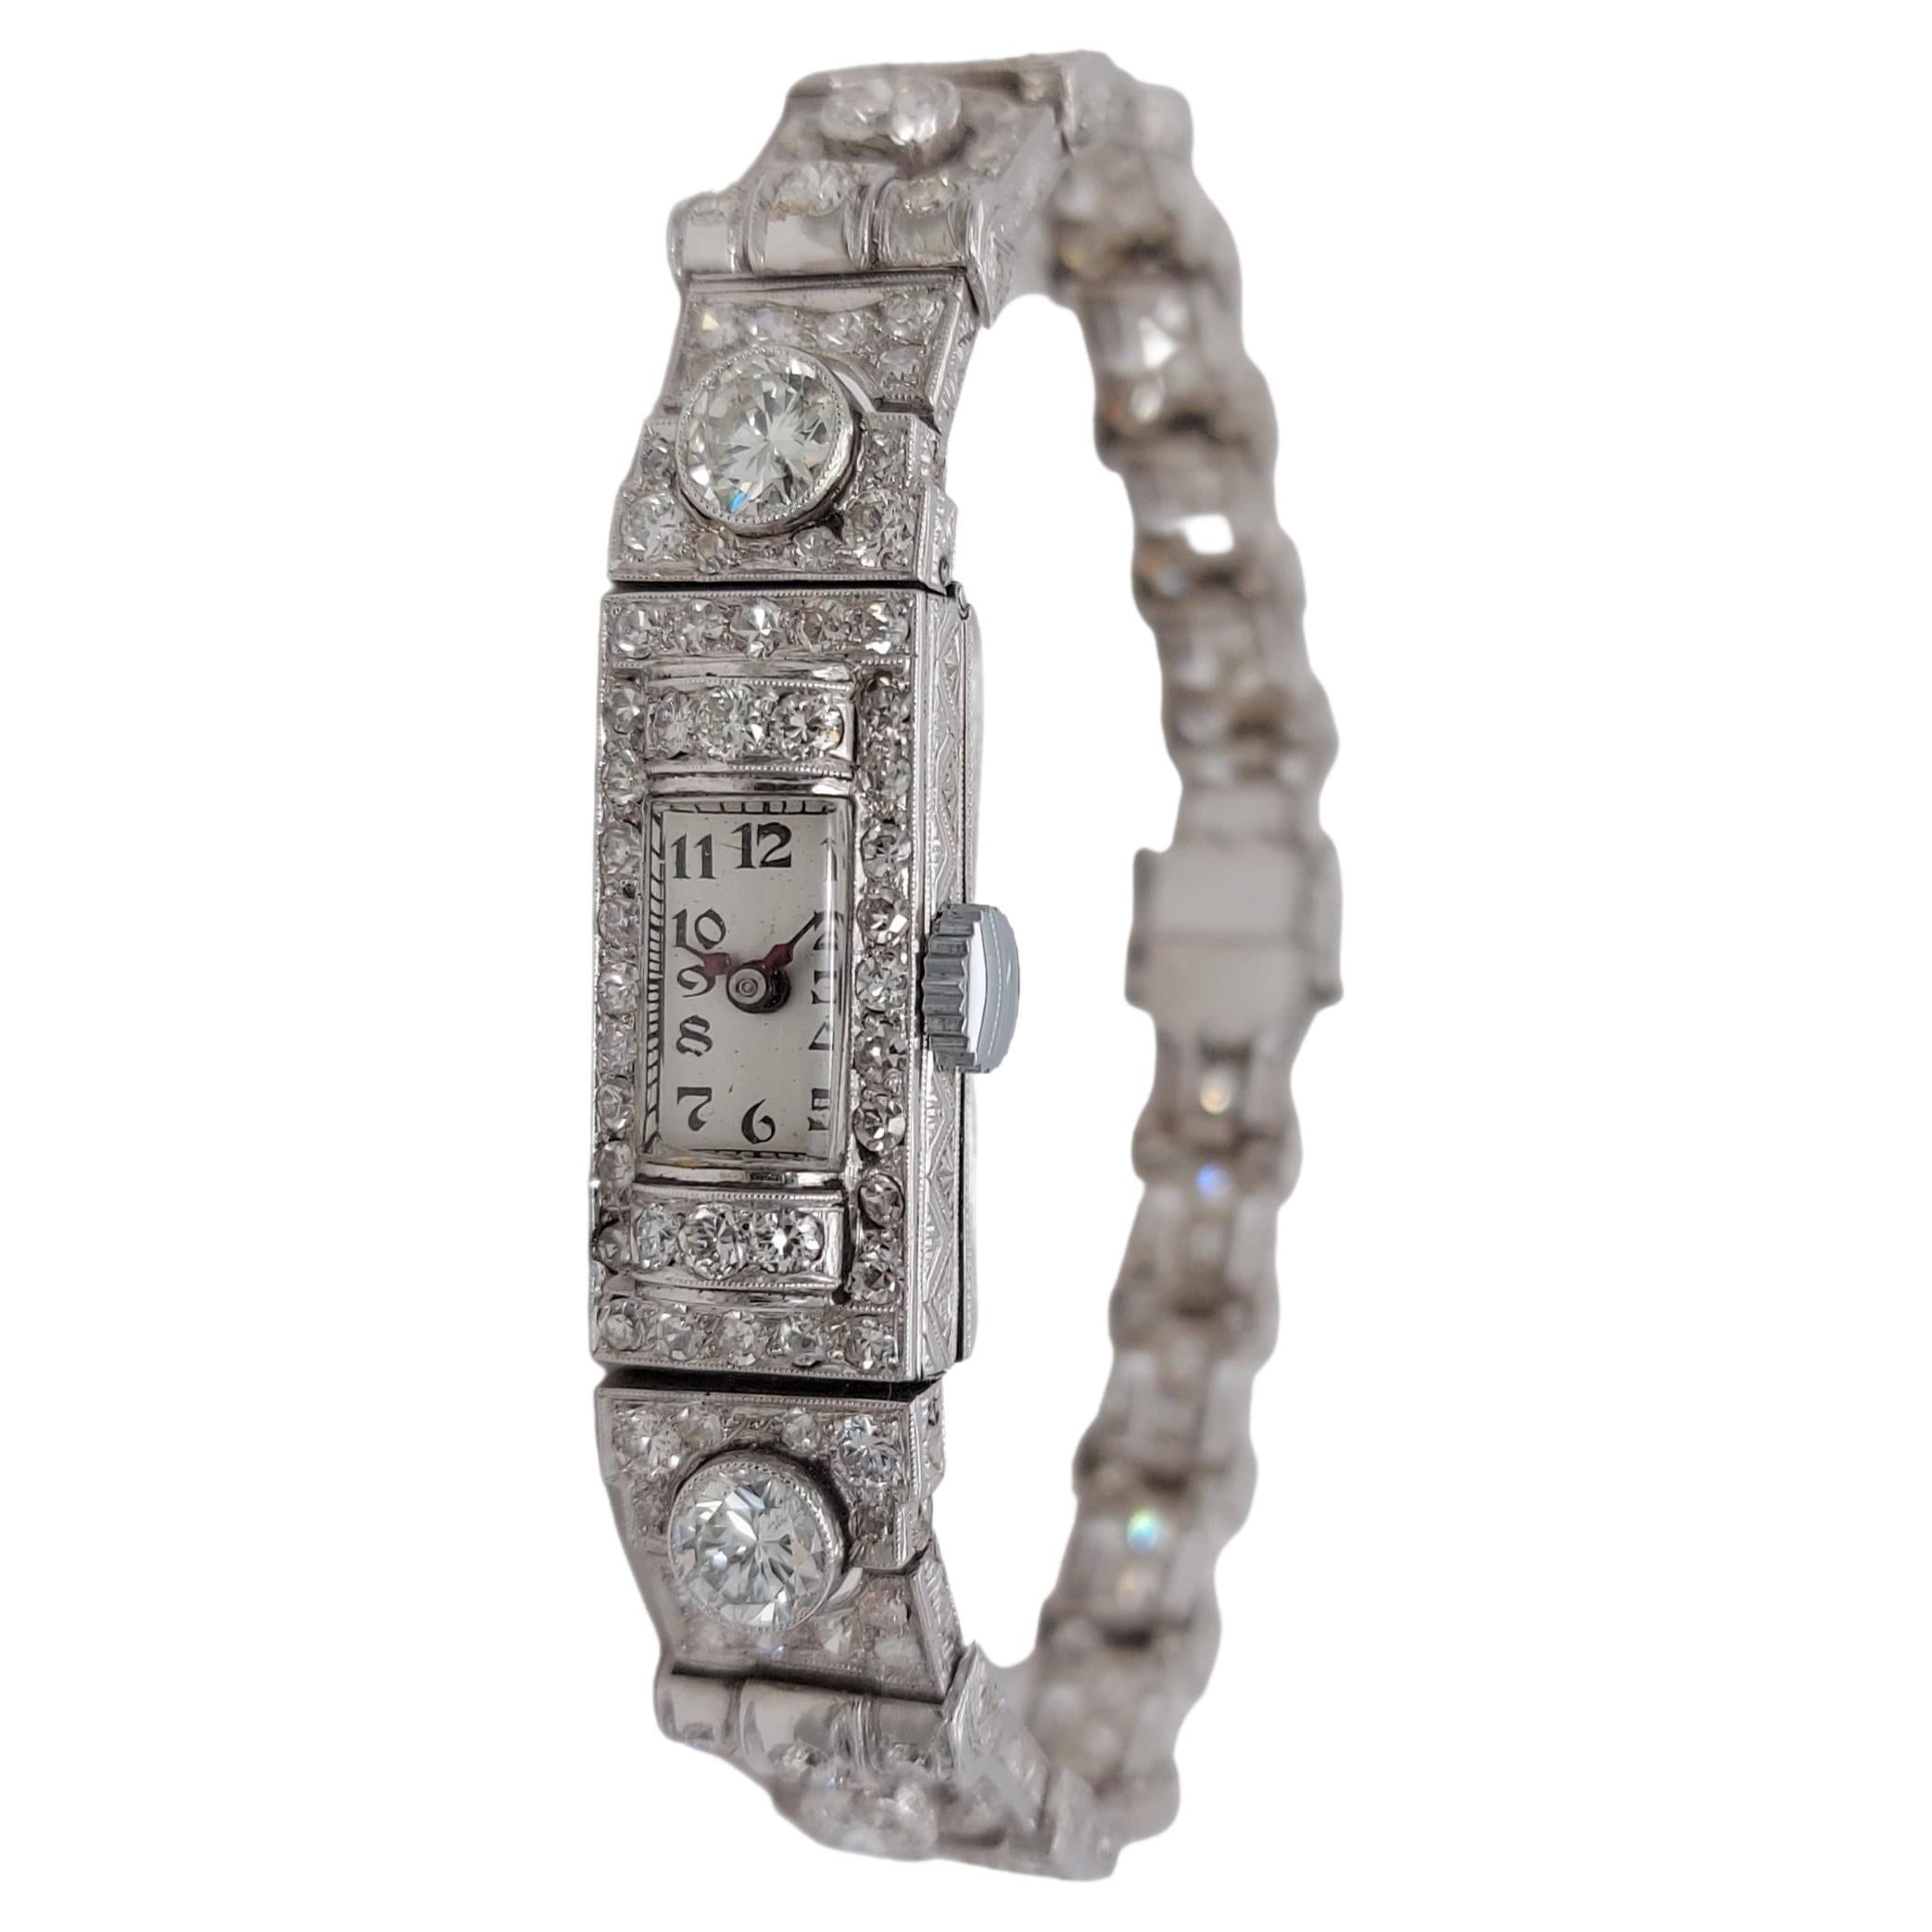 Magnifique montre-bracelet habillée en platine avec gros diamants et diamants